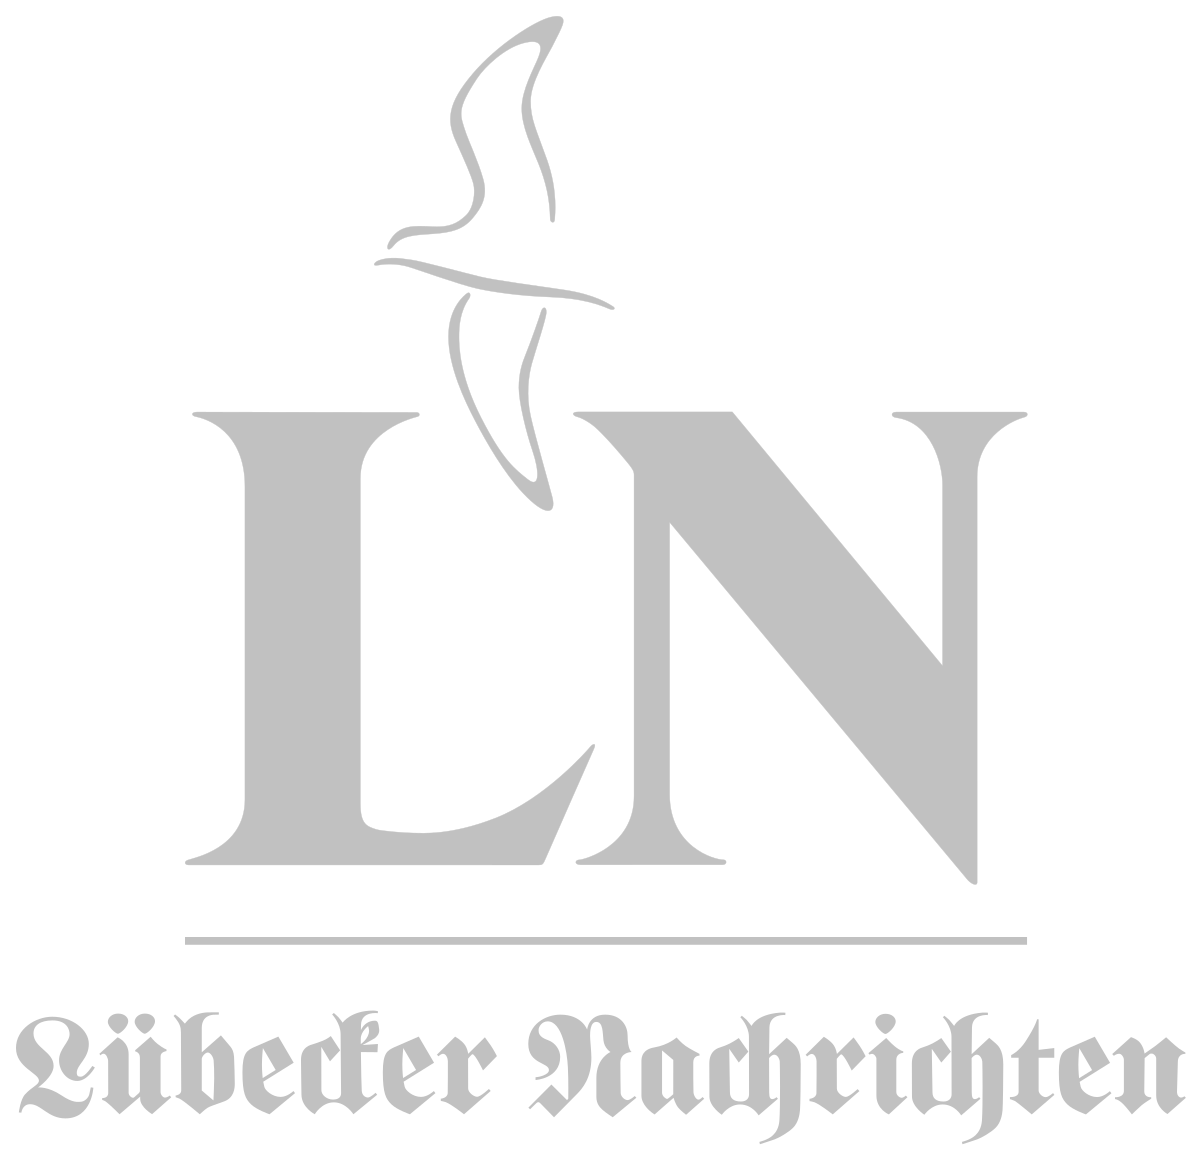 Lübecker_Nachrichten_Logo.svg Kopie